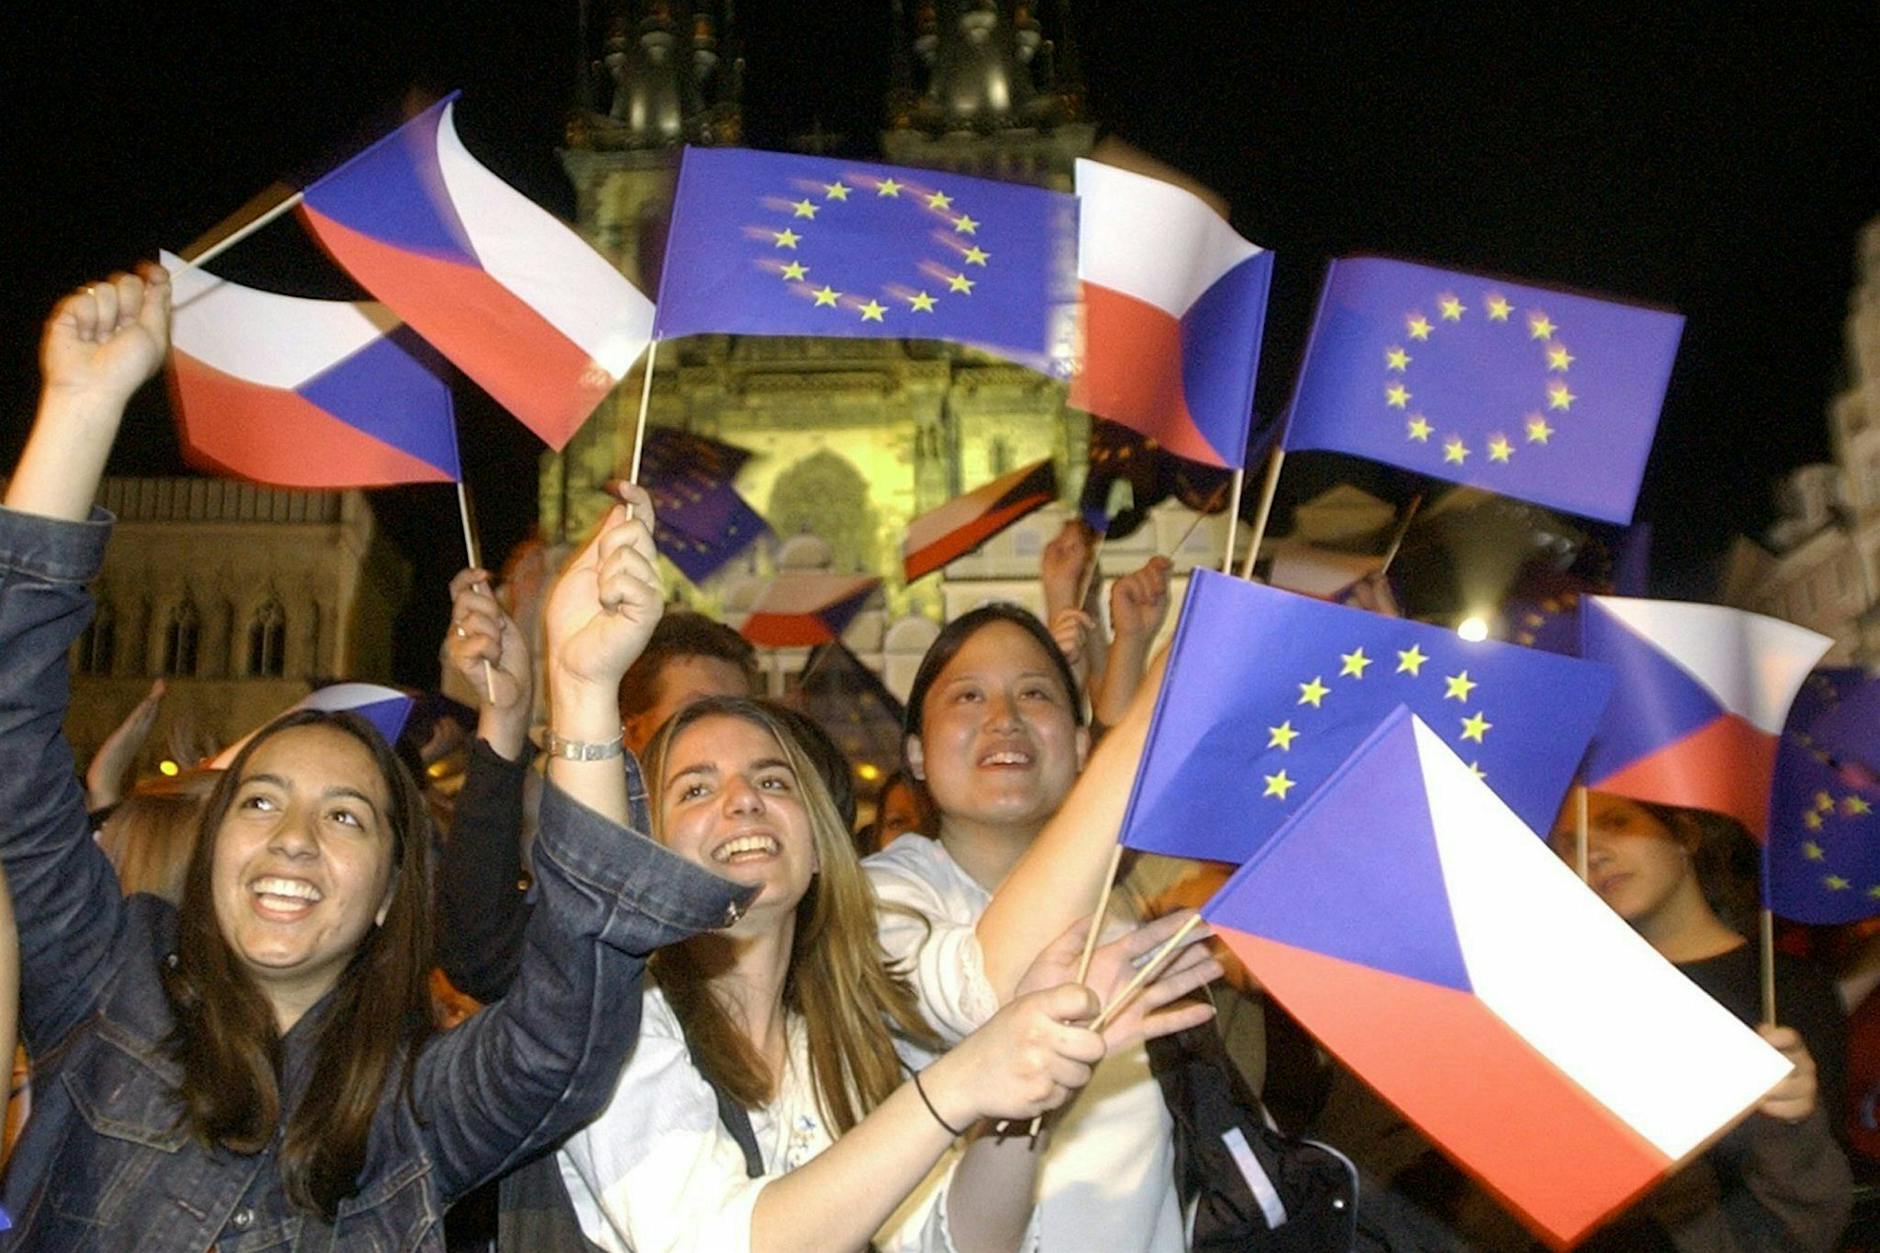 Tschechiens Botschafter Tomáš Kafka über EU-Erweiterung: Dies ist keine Zeit der Furcht!